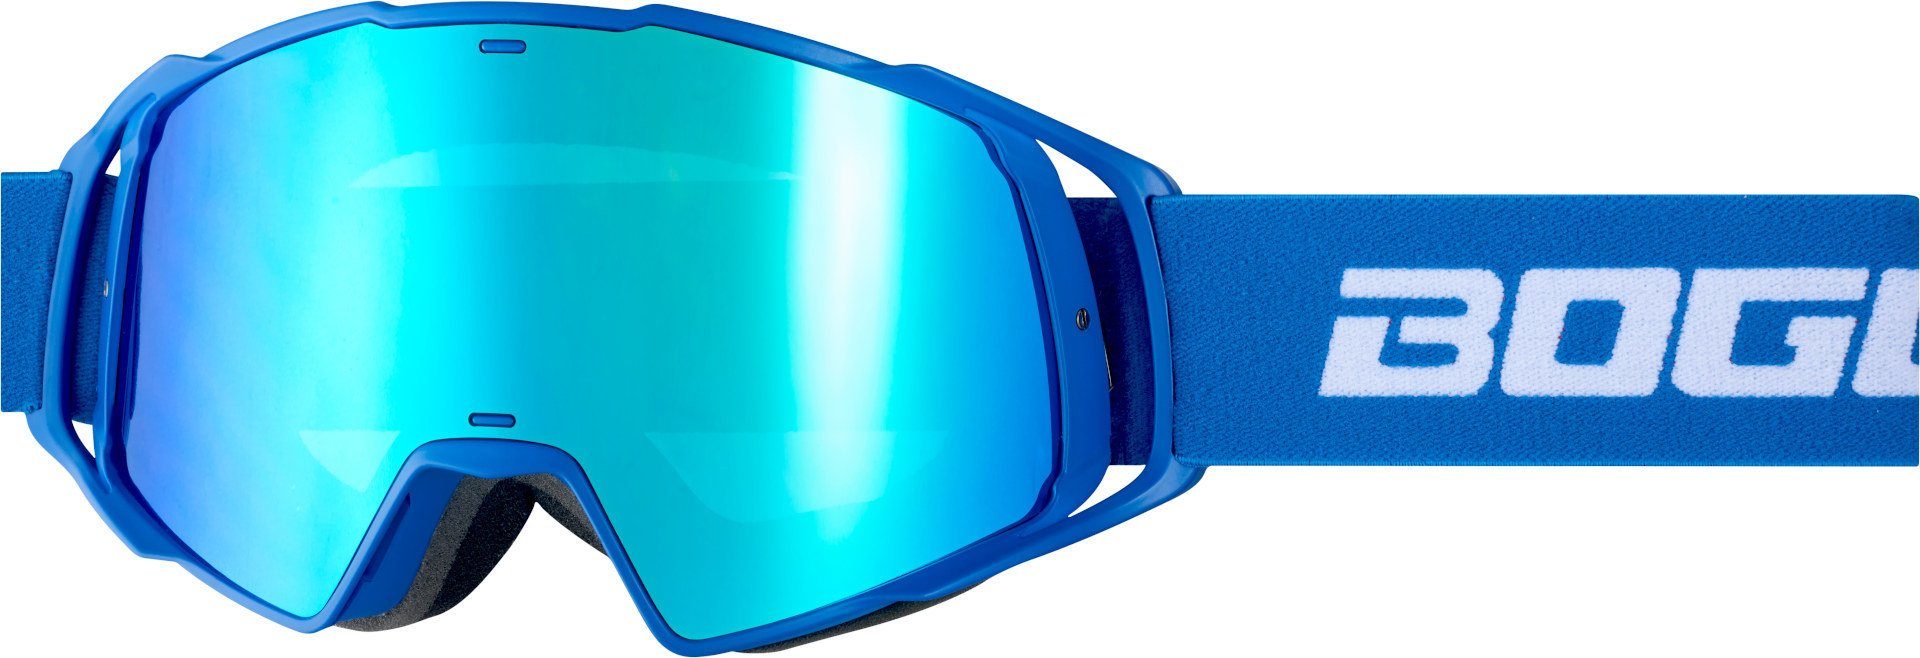 Brille Bogotto Motocross Blue/White Motorradbrille B-Faster